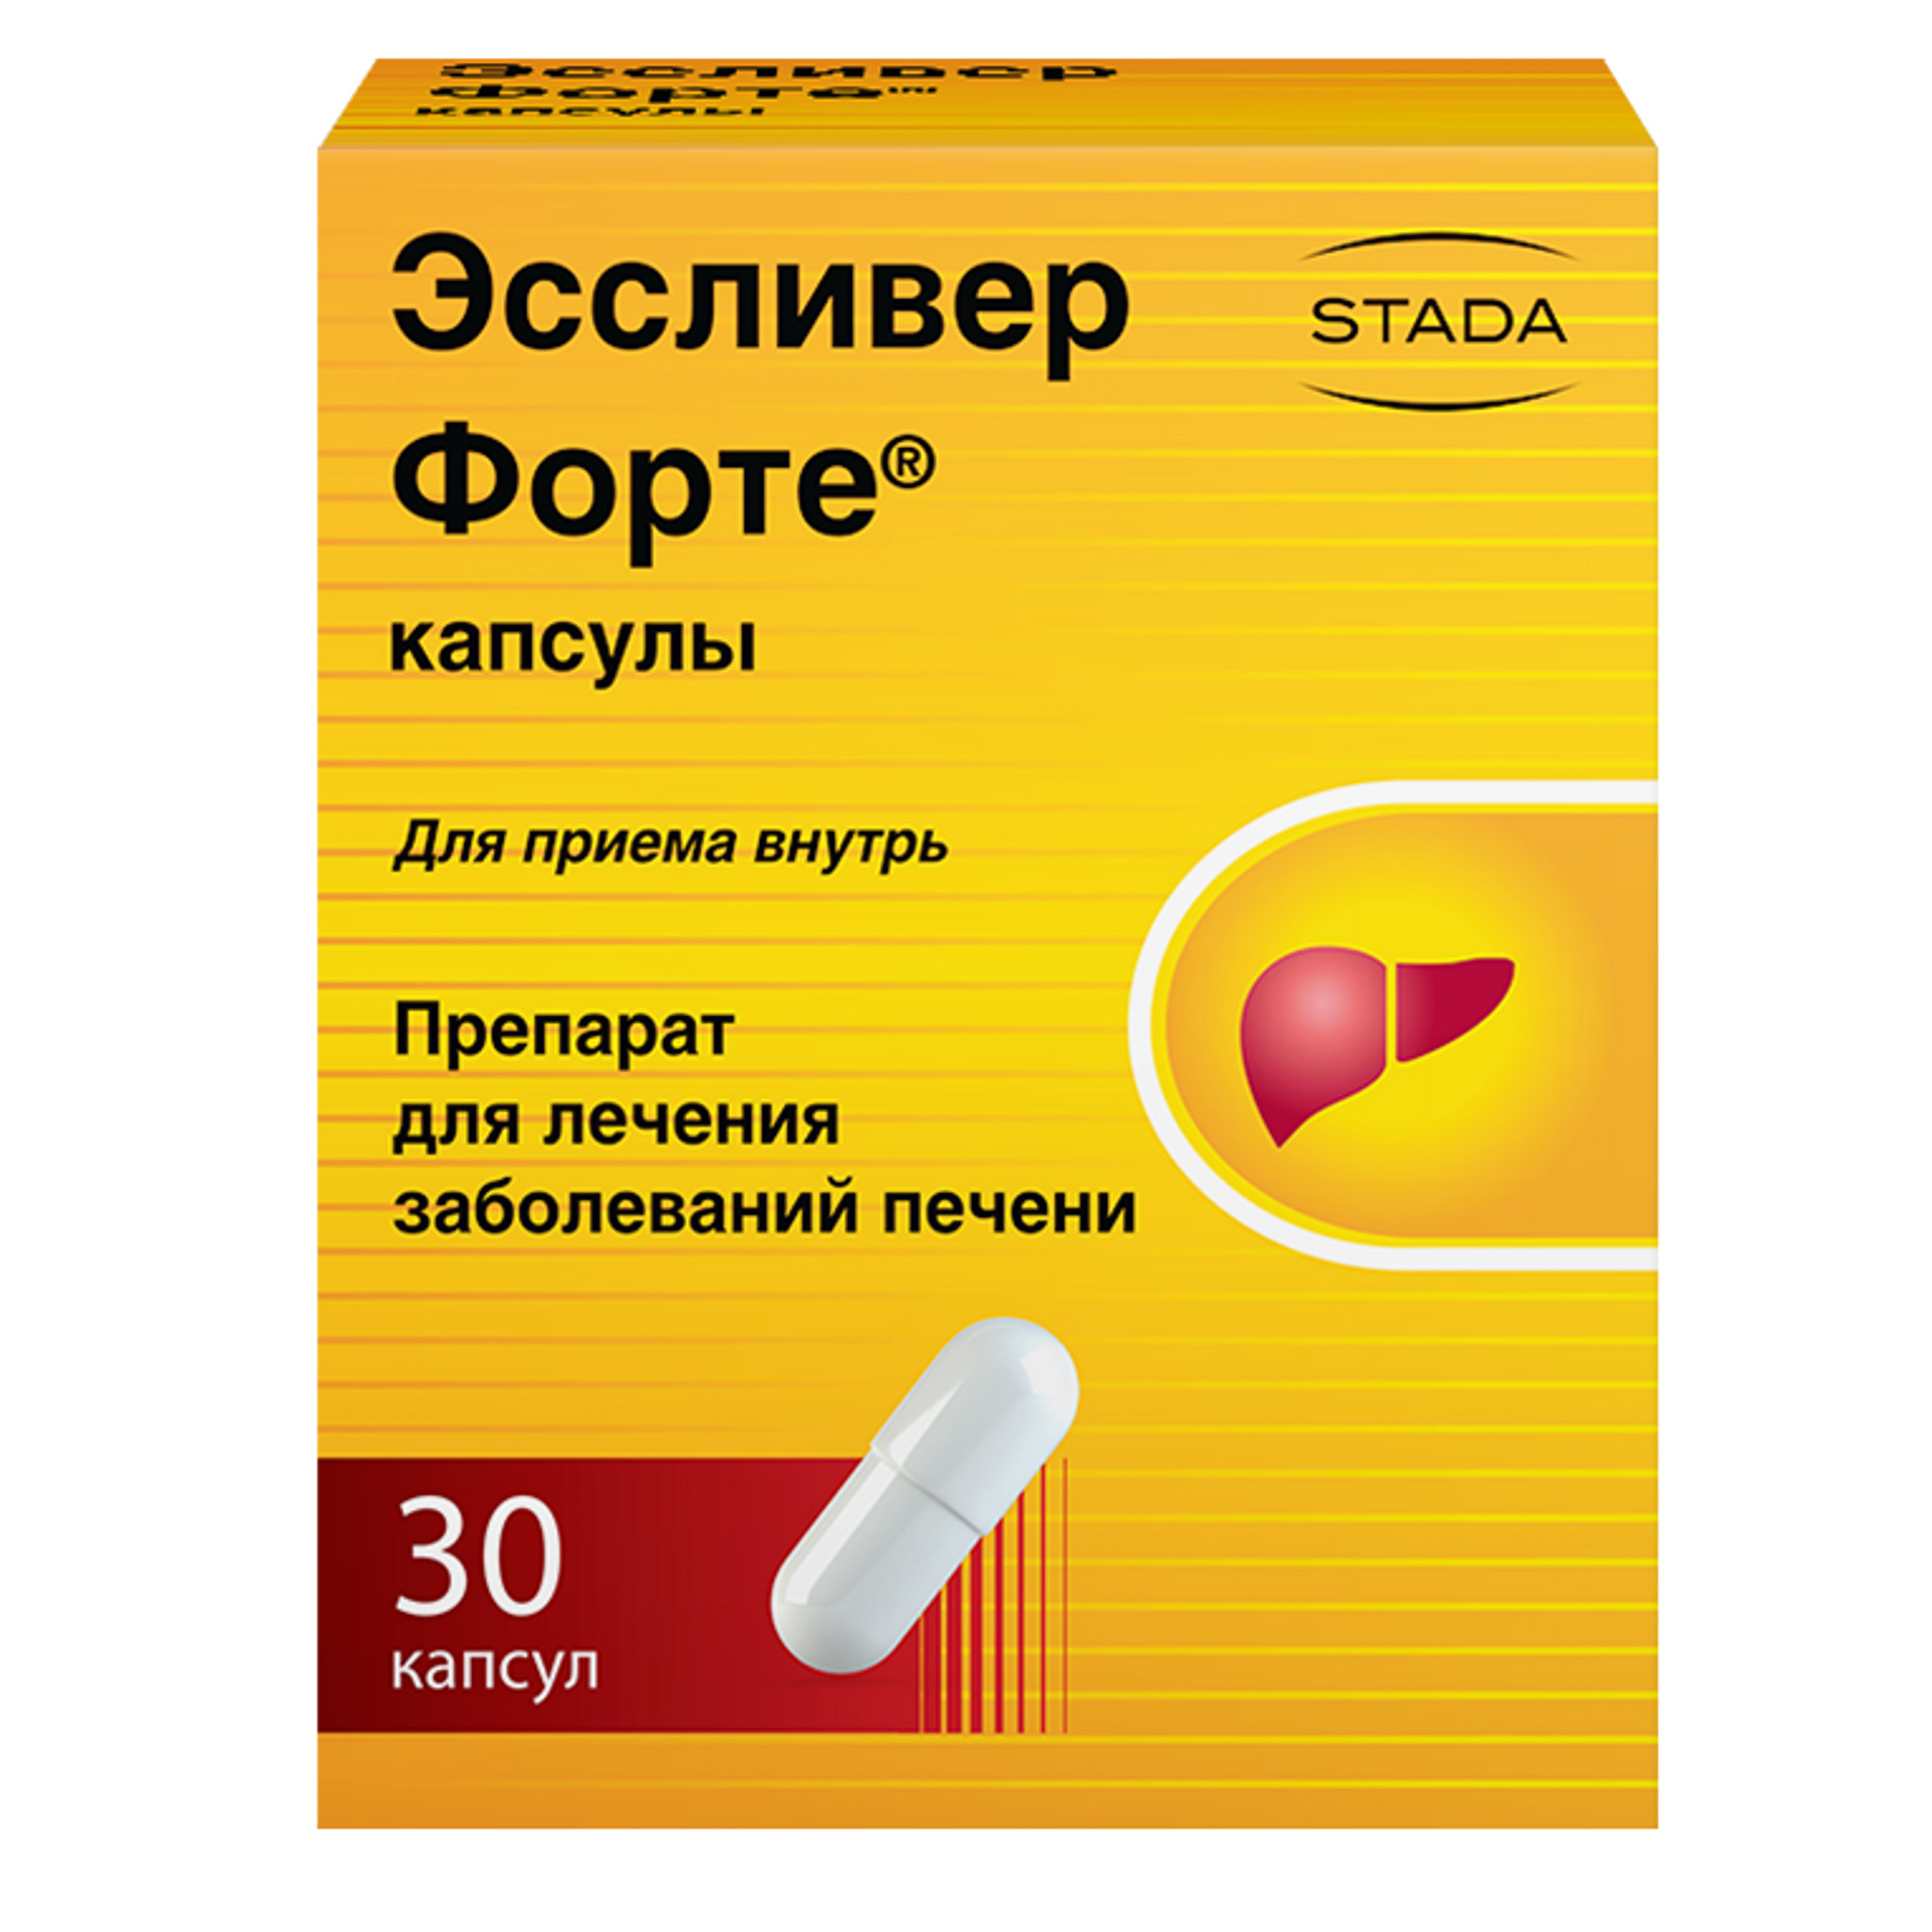 Эссливер форте, капсулы, 30 шт. витаминно минеральный комплекс archi vitamin s28 капсулы 45 шт